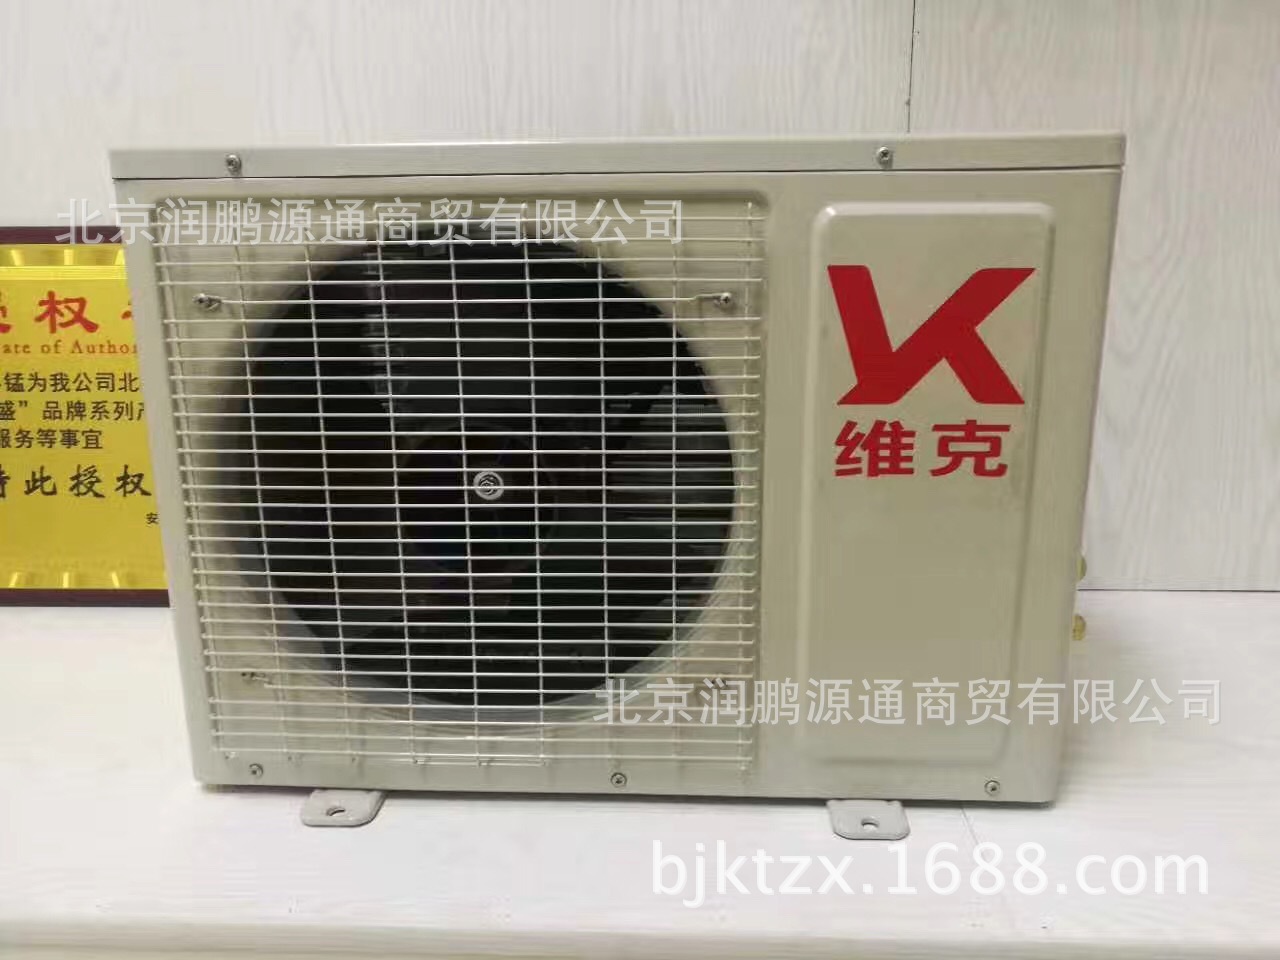 厂家直销KFR-35GW/DY-900YC一诺维克空调 定频壁挂式空调一件代示例图6